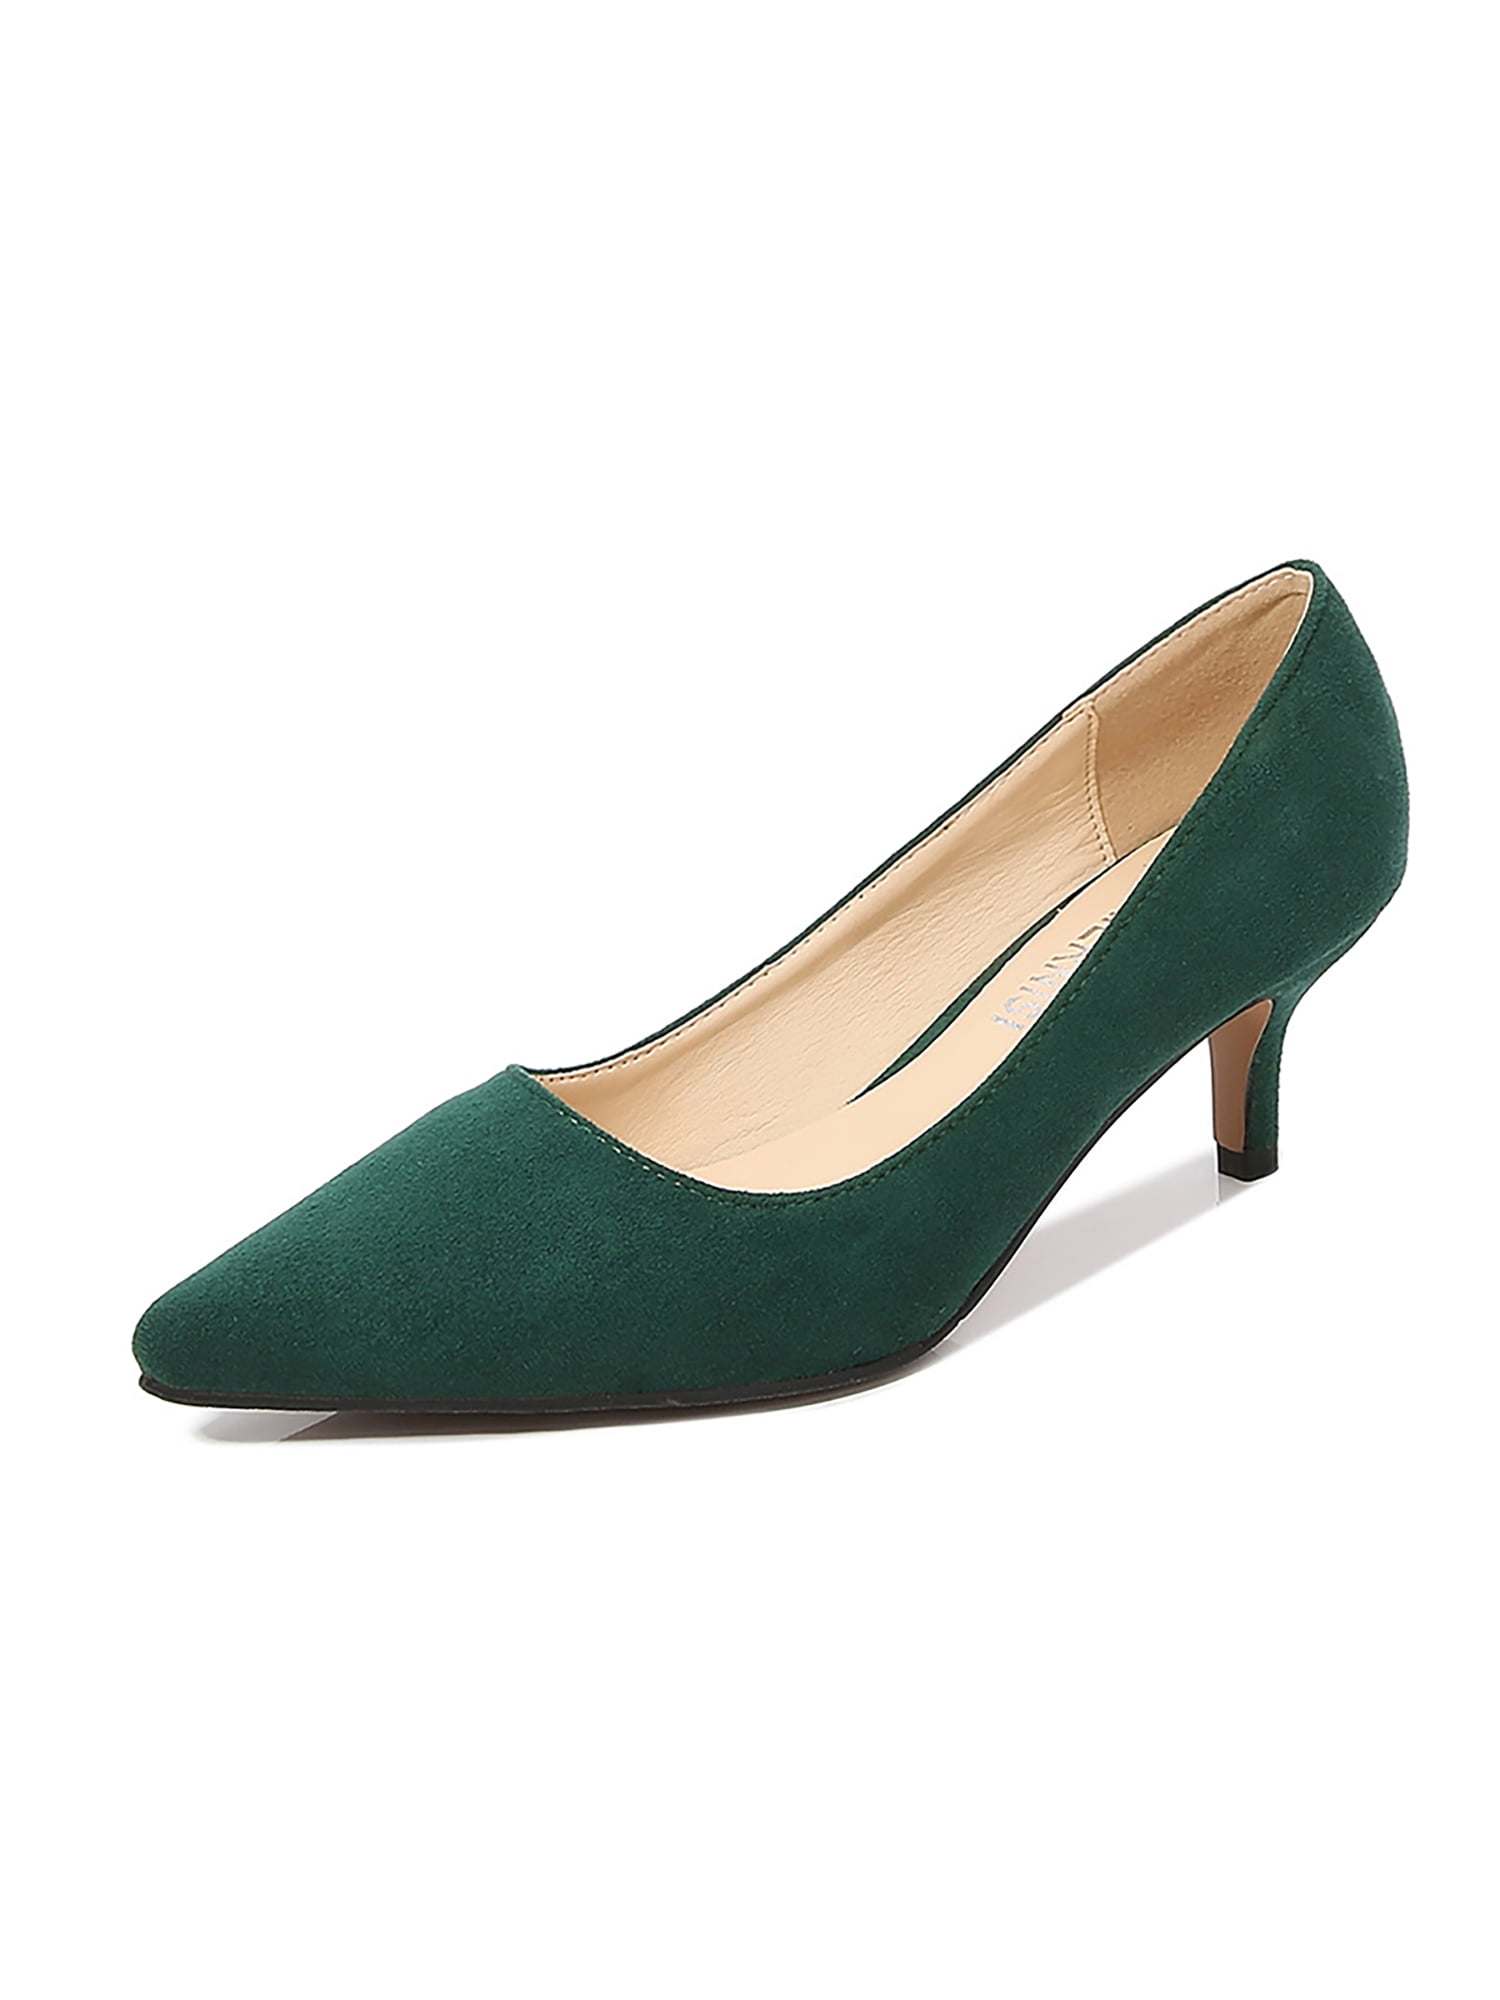 Women's Green Shoes | Green Ballerina & Block Heel | Next UK